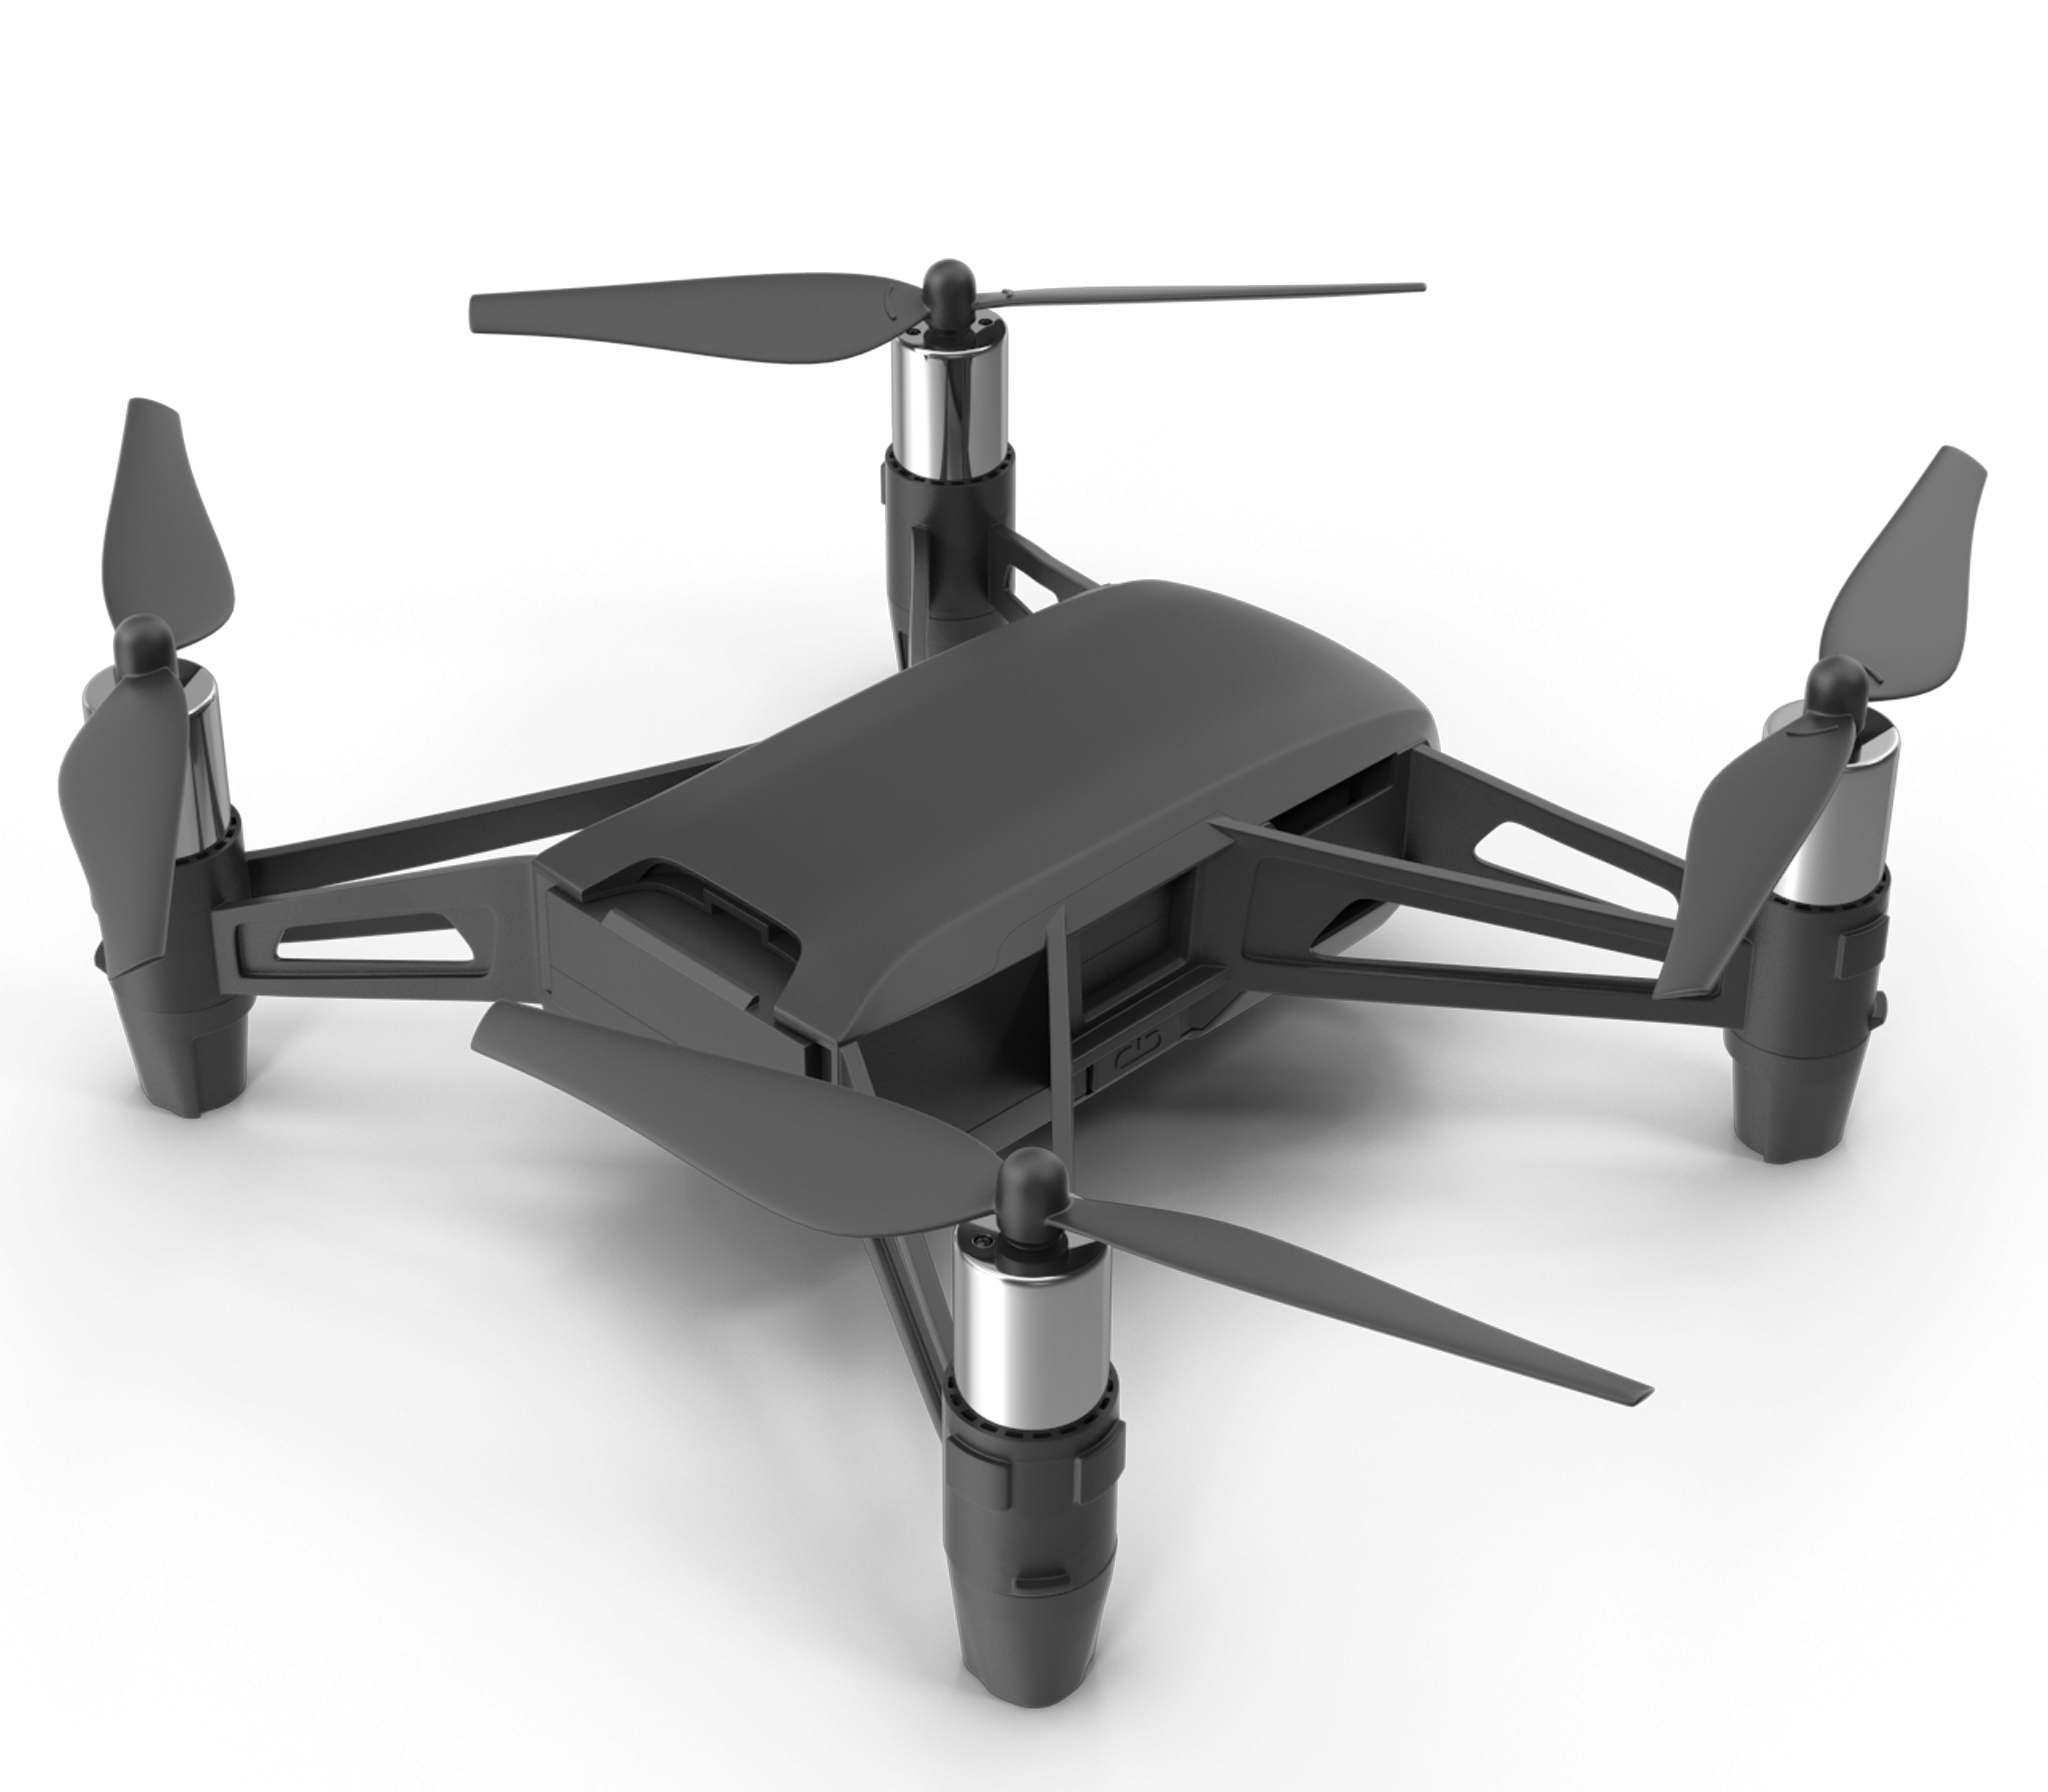 Drone.F11.2k-1-e1584849672388